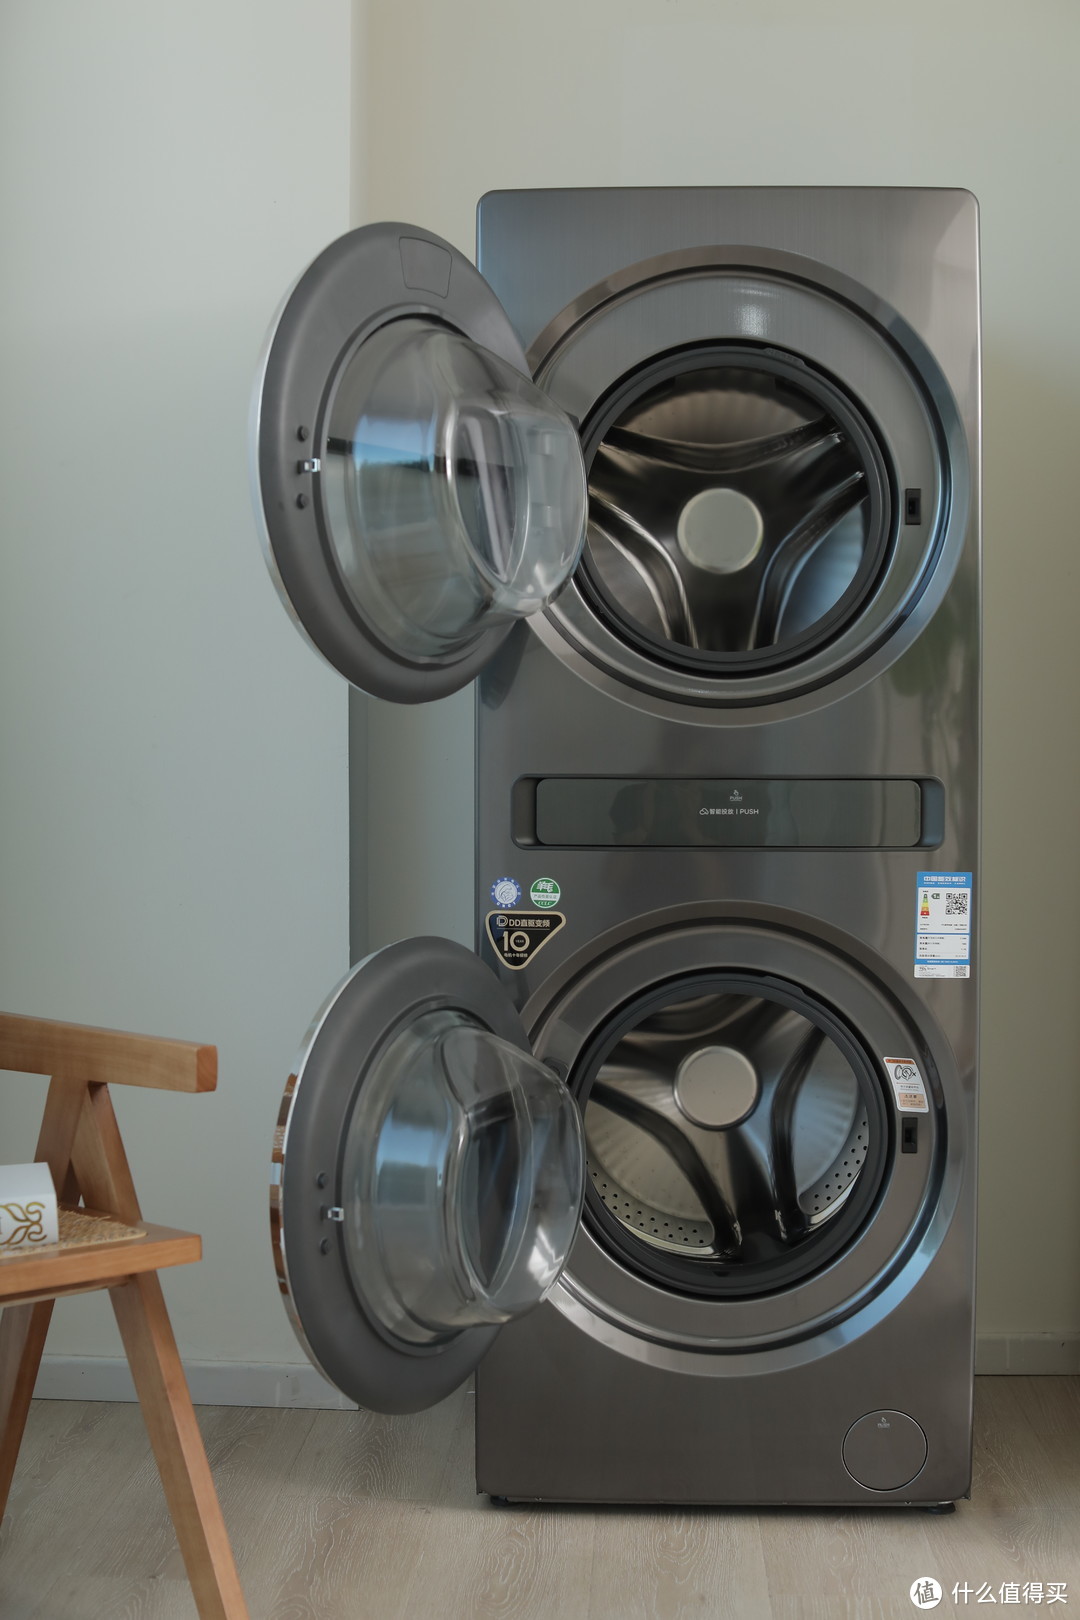 听说你家卫生间已经被洗衣机占满了？来看我这一台顶俩的TCL 双子舱Q10洗衣体验